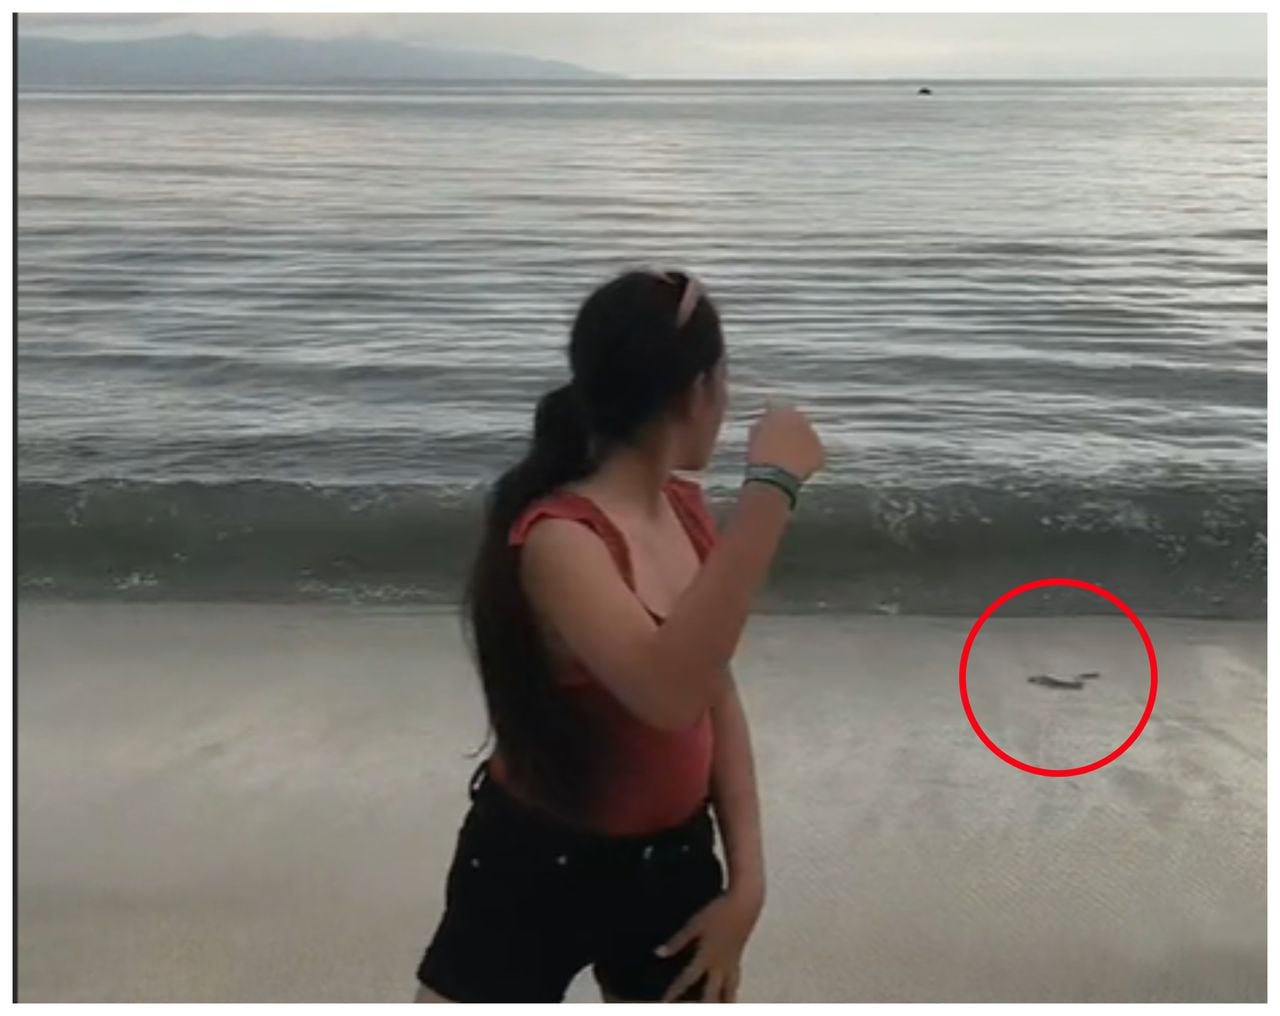 A pesar de la inusual aparición de estas serpientes marinas en la playa de Puerto Vallarta, las autoridades no han emitido una declaración oficial al respecto.